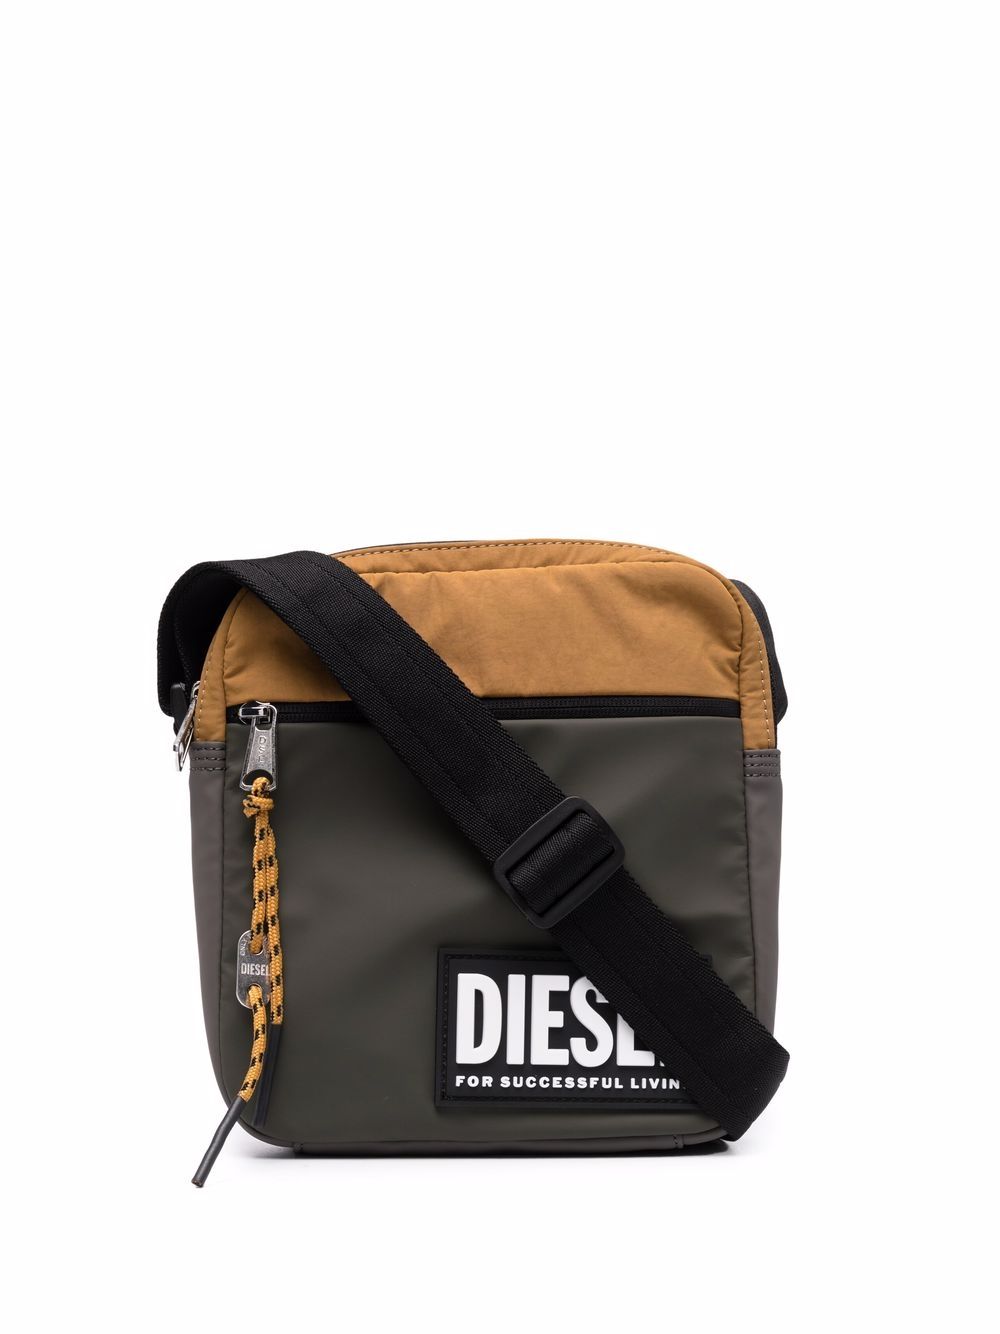 фото Diesel сумка на плечо